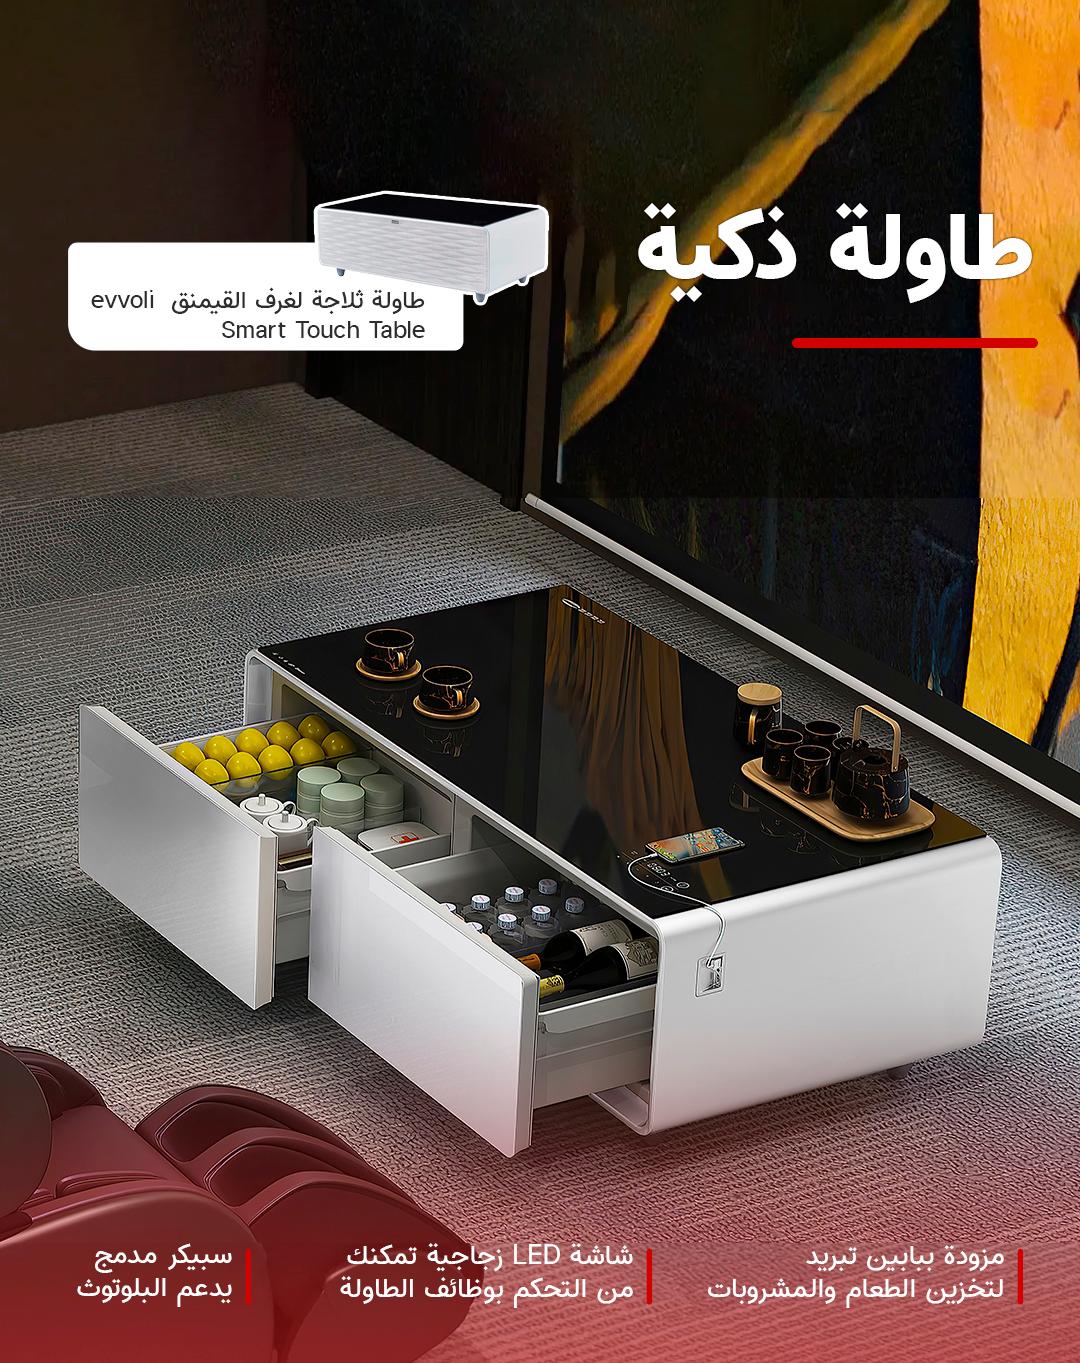 طاولة ثلاجة لغرف القيمنق بسعة 130 لتر (  بابين للتبريد ) evvoli Smart Touch Table With Two Refrigerating Doors